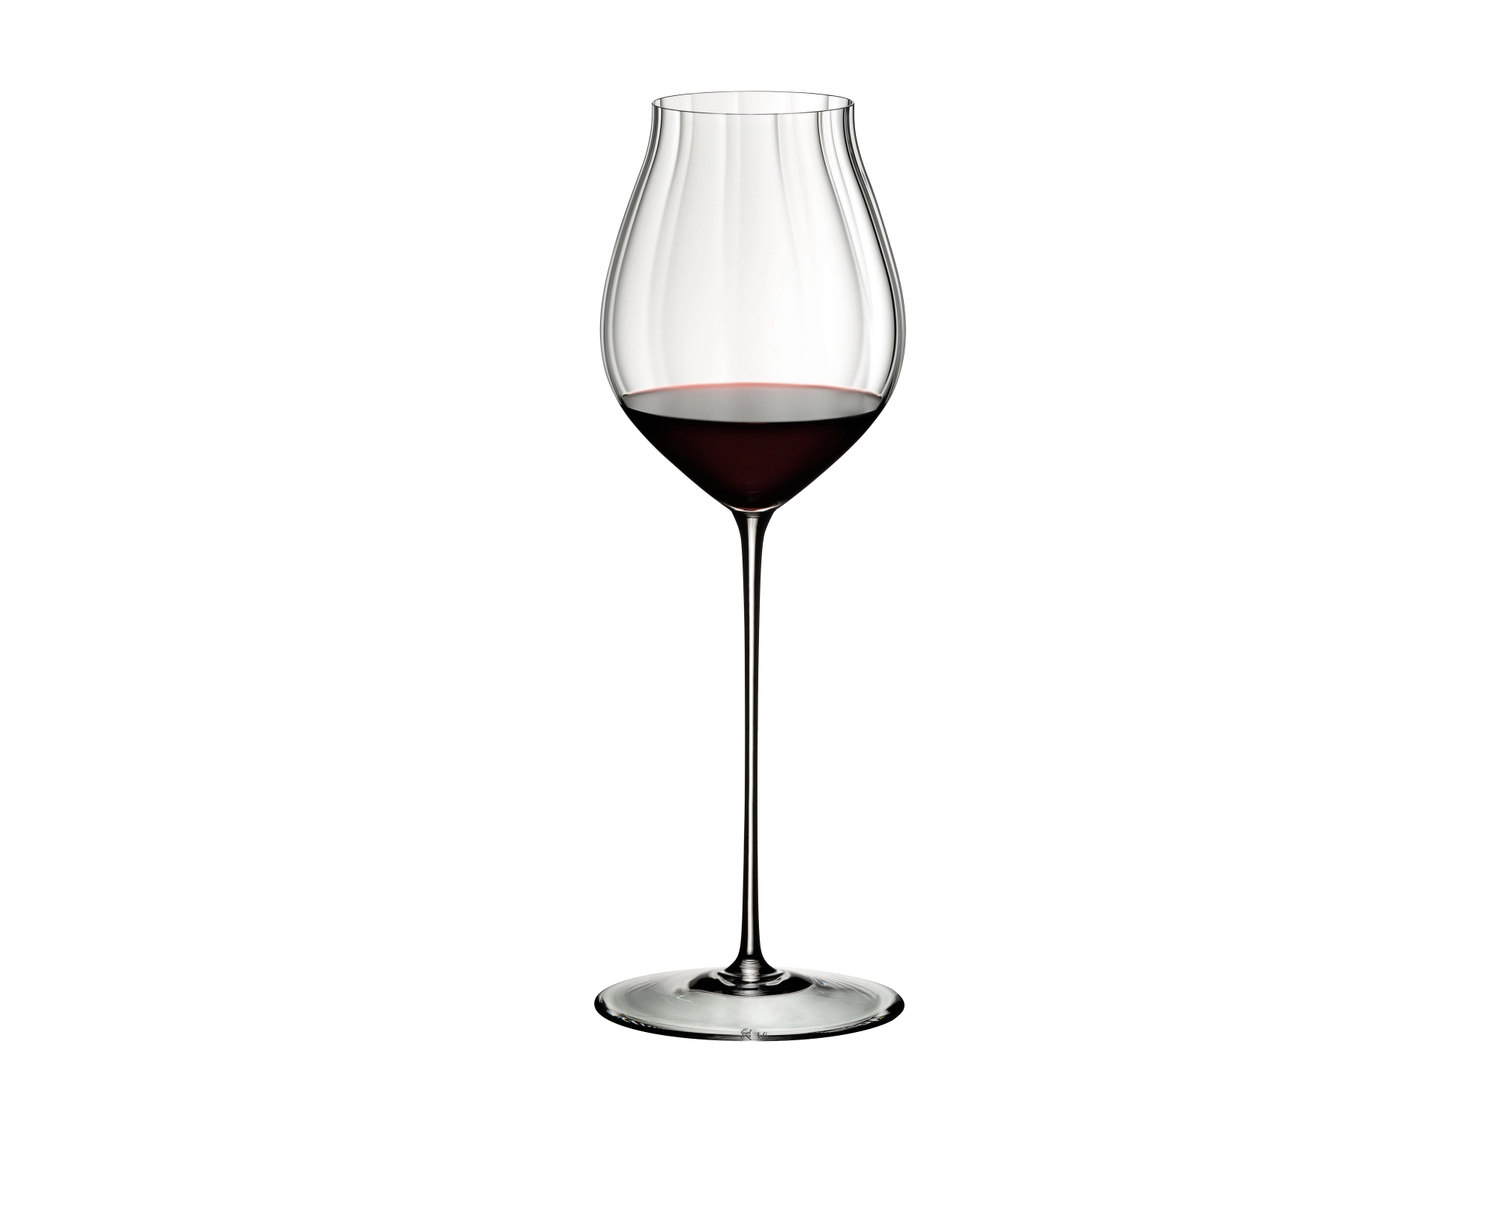 Riedel набор бокалов для вина veritas Riesling/Zinfandel 6449/15 2 шт. 395 Мл. Бокал для вина Enoteca, 590 мл. Riedel бокал для вина Sommeliers Tinto reserva 4400/31 620 мл. Riedel набор бокалов для вина veritas old World Pinot Noir 6449/07 2 шт. 705 Мл. Бокал для вина литр